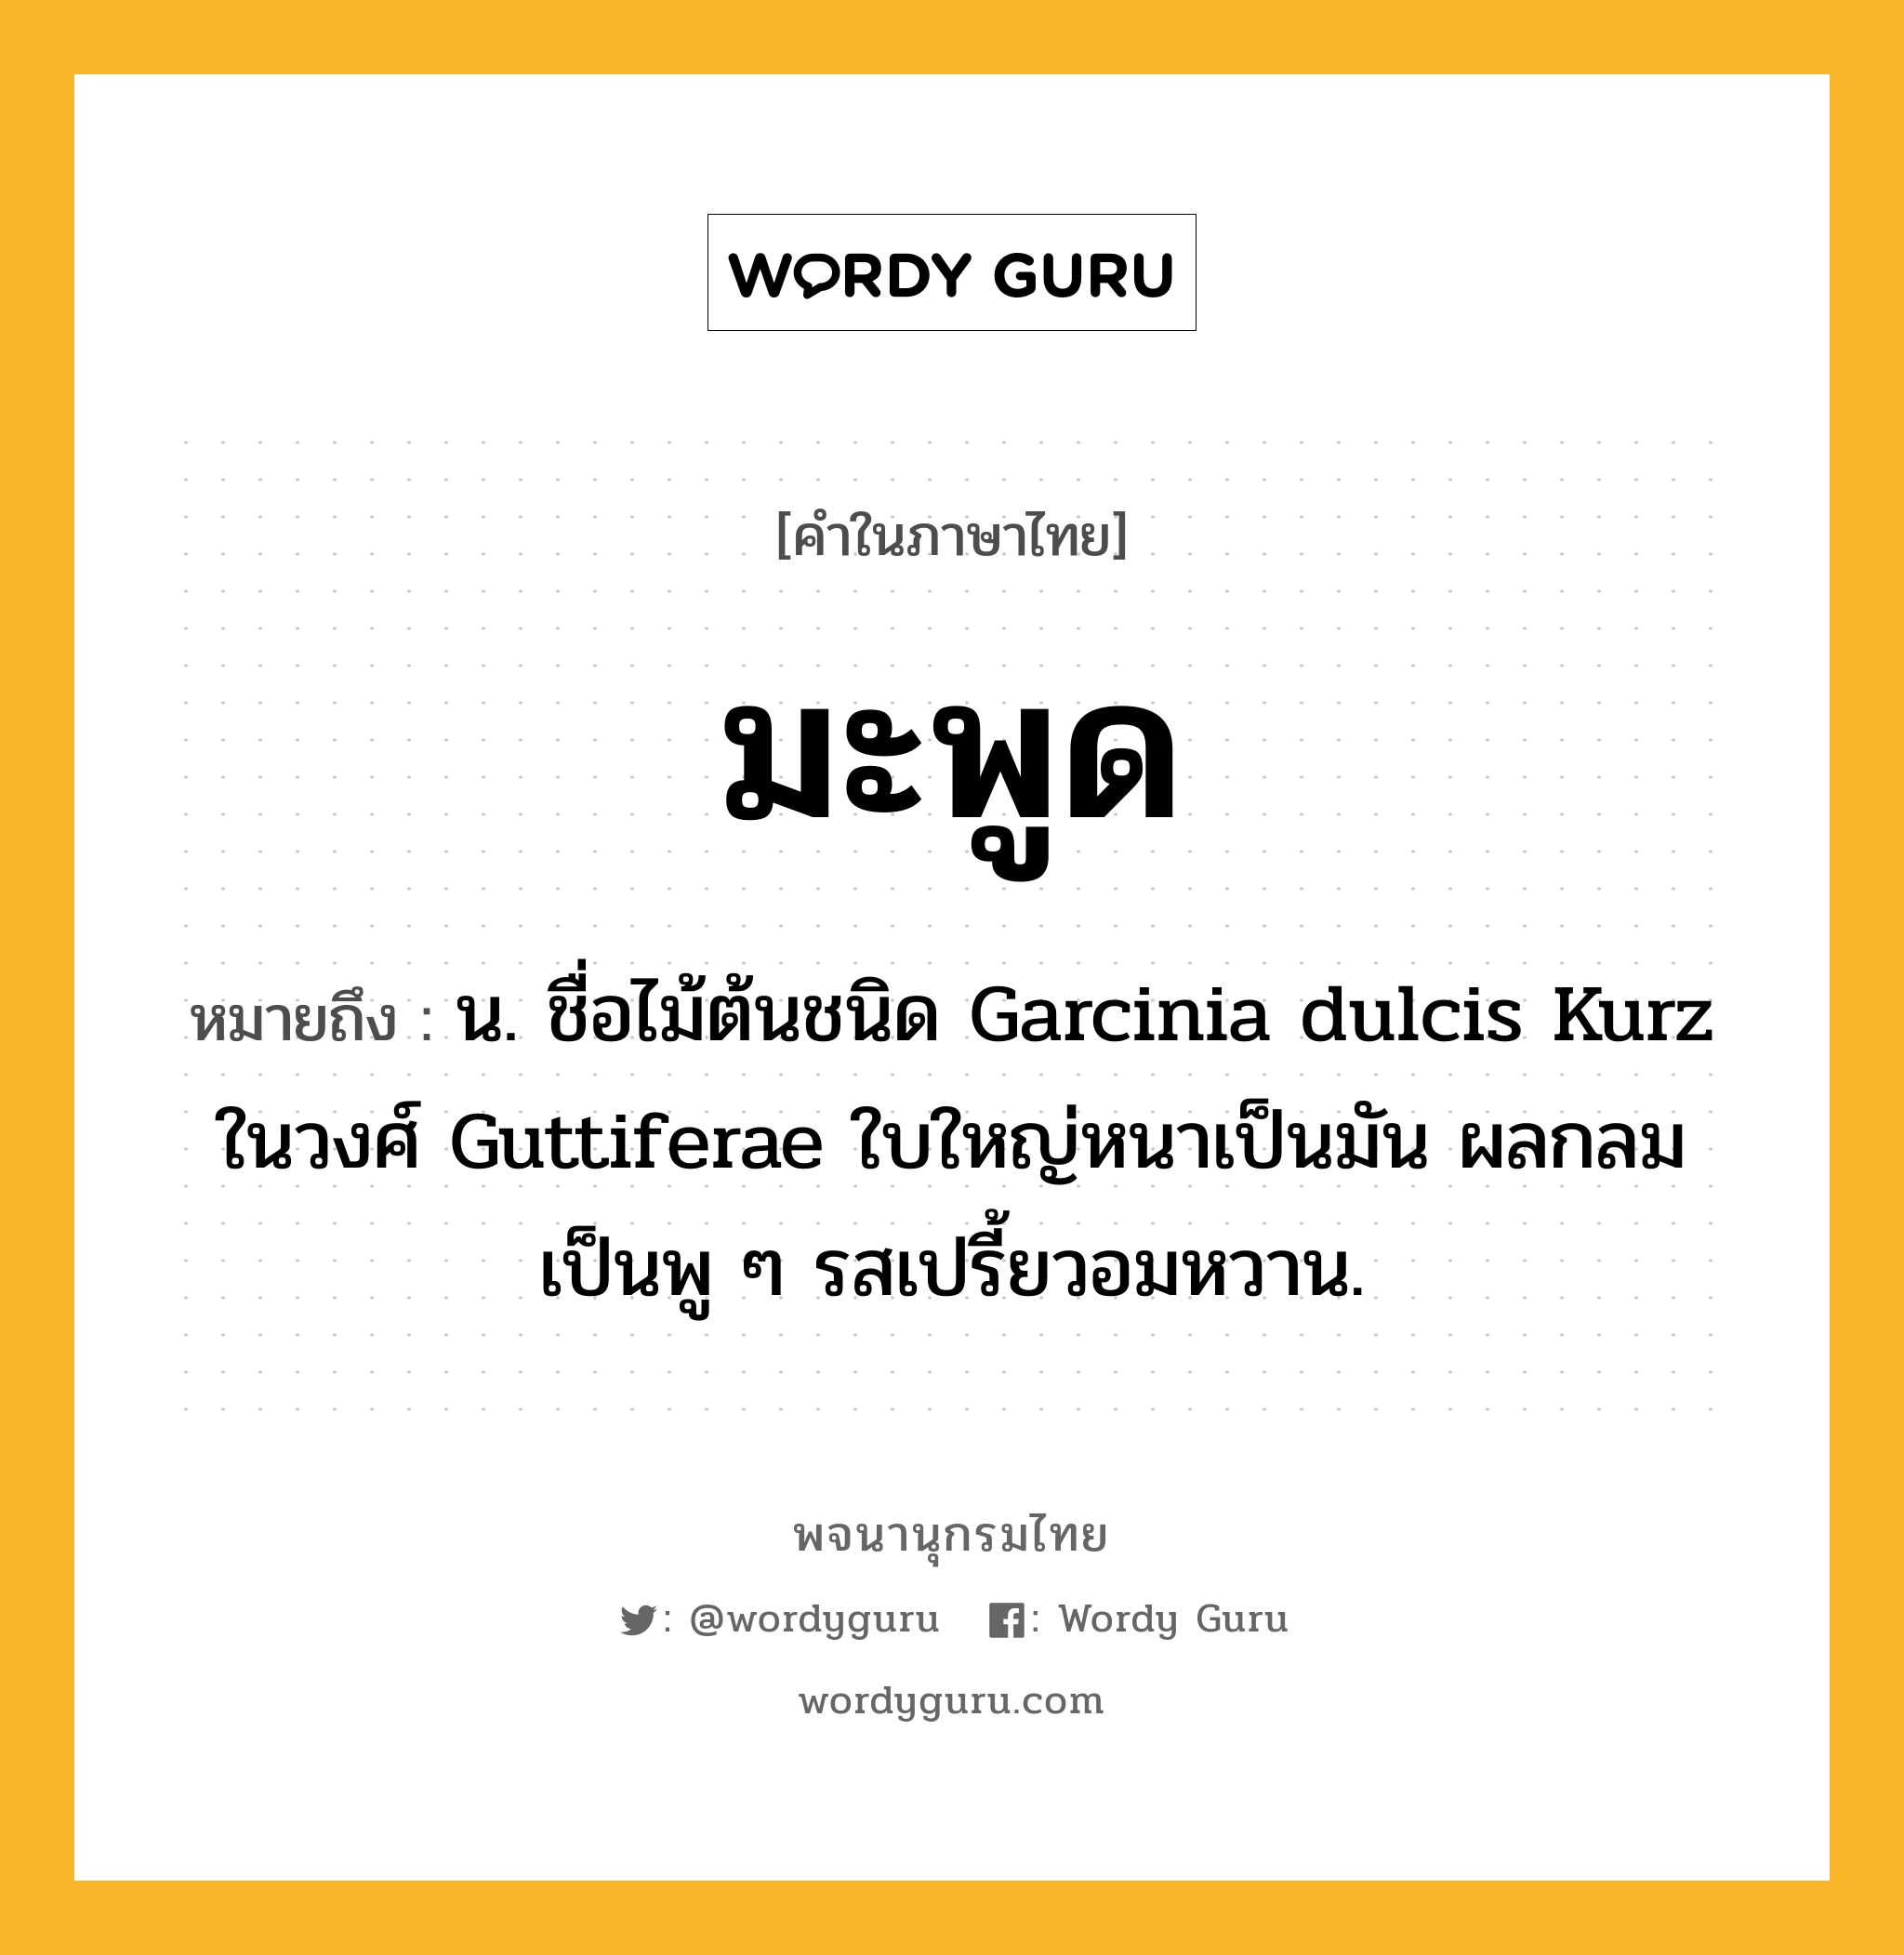 มะพูด หมายถึงอะไร?, คำในภาษาไทย มะพูด หมายถึง น. ชื่อไม้ต้นชนิด Garcinia dulcis Kurz ในวงศ์ Guttiferae ใบใหญ่หนาเป็นมัน ผลกลมเป็นพู ๆ รสเปรี้ยวอมหวาน.